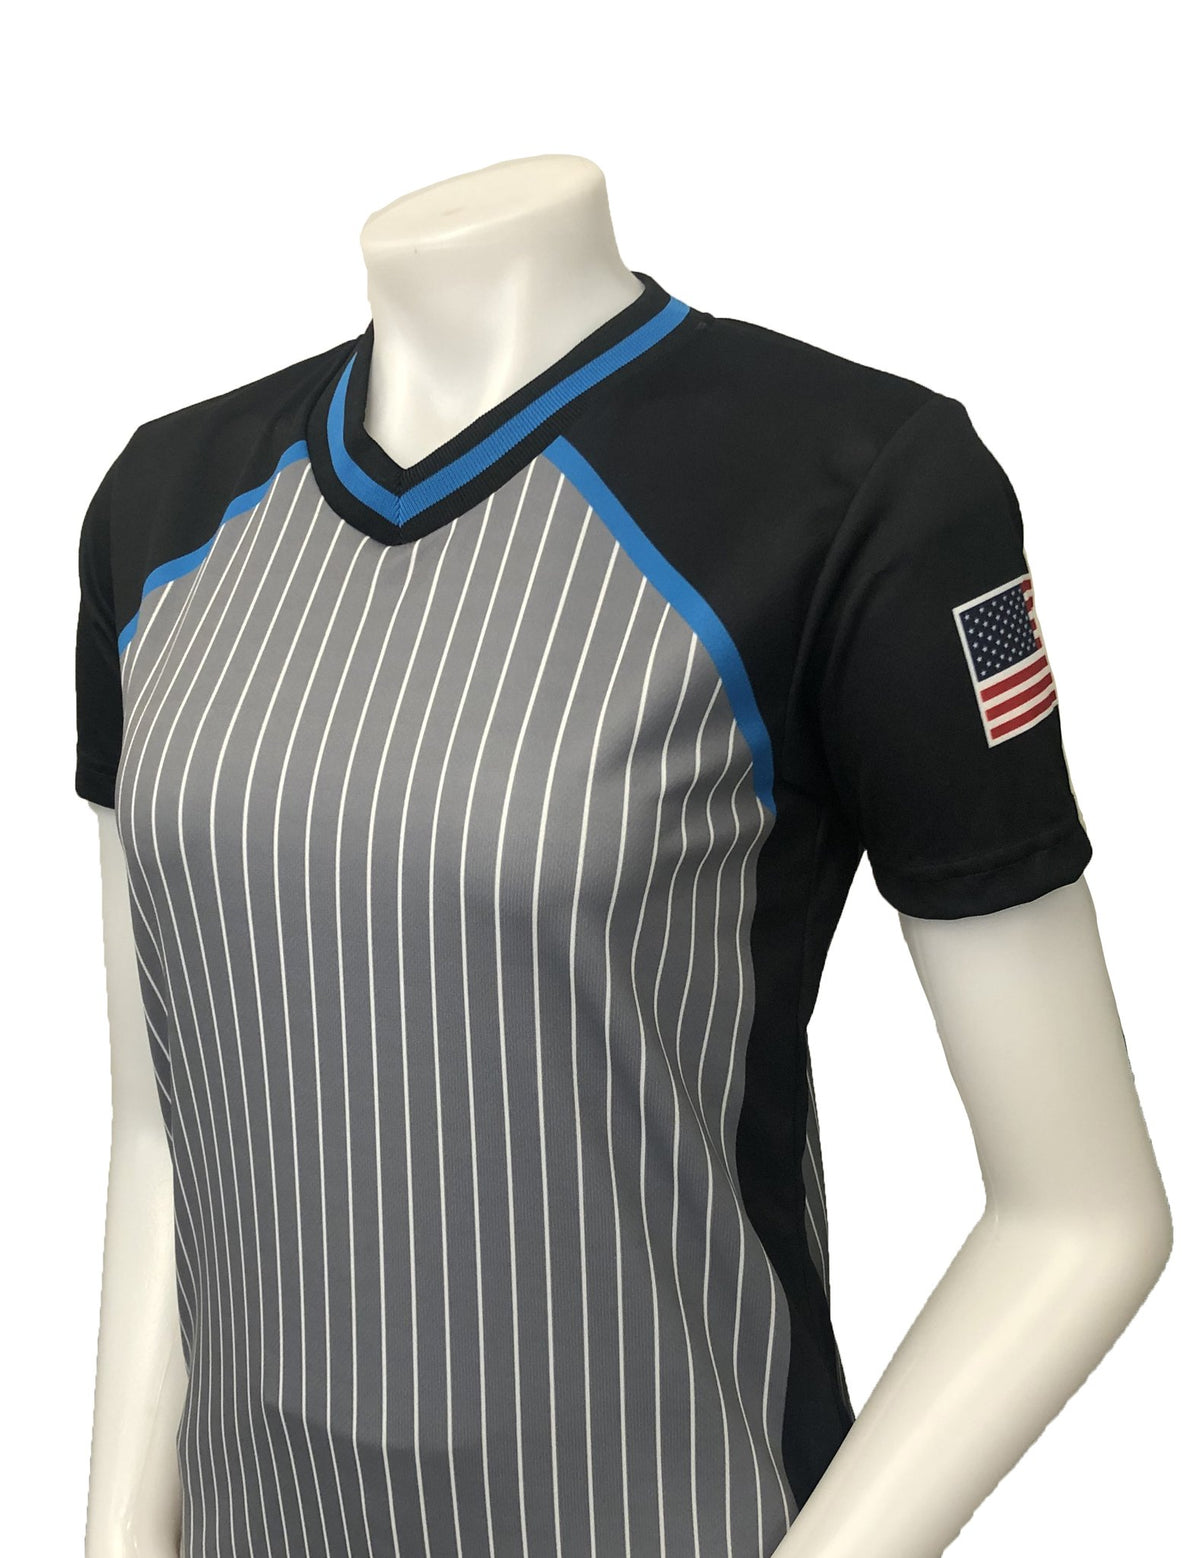 camiseta arbitro;ropa arbitro;arbitro;accesorios arbitro